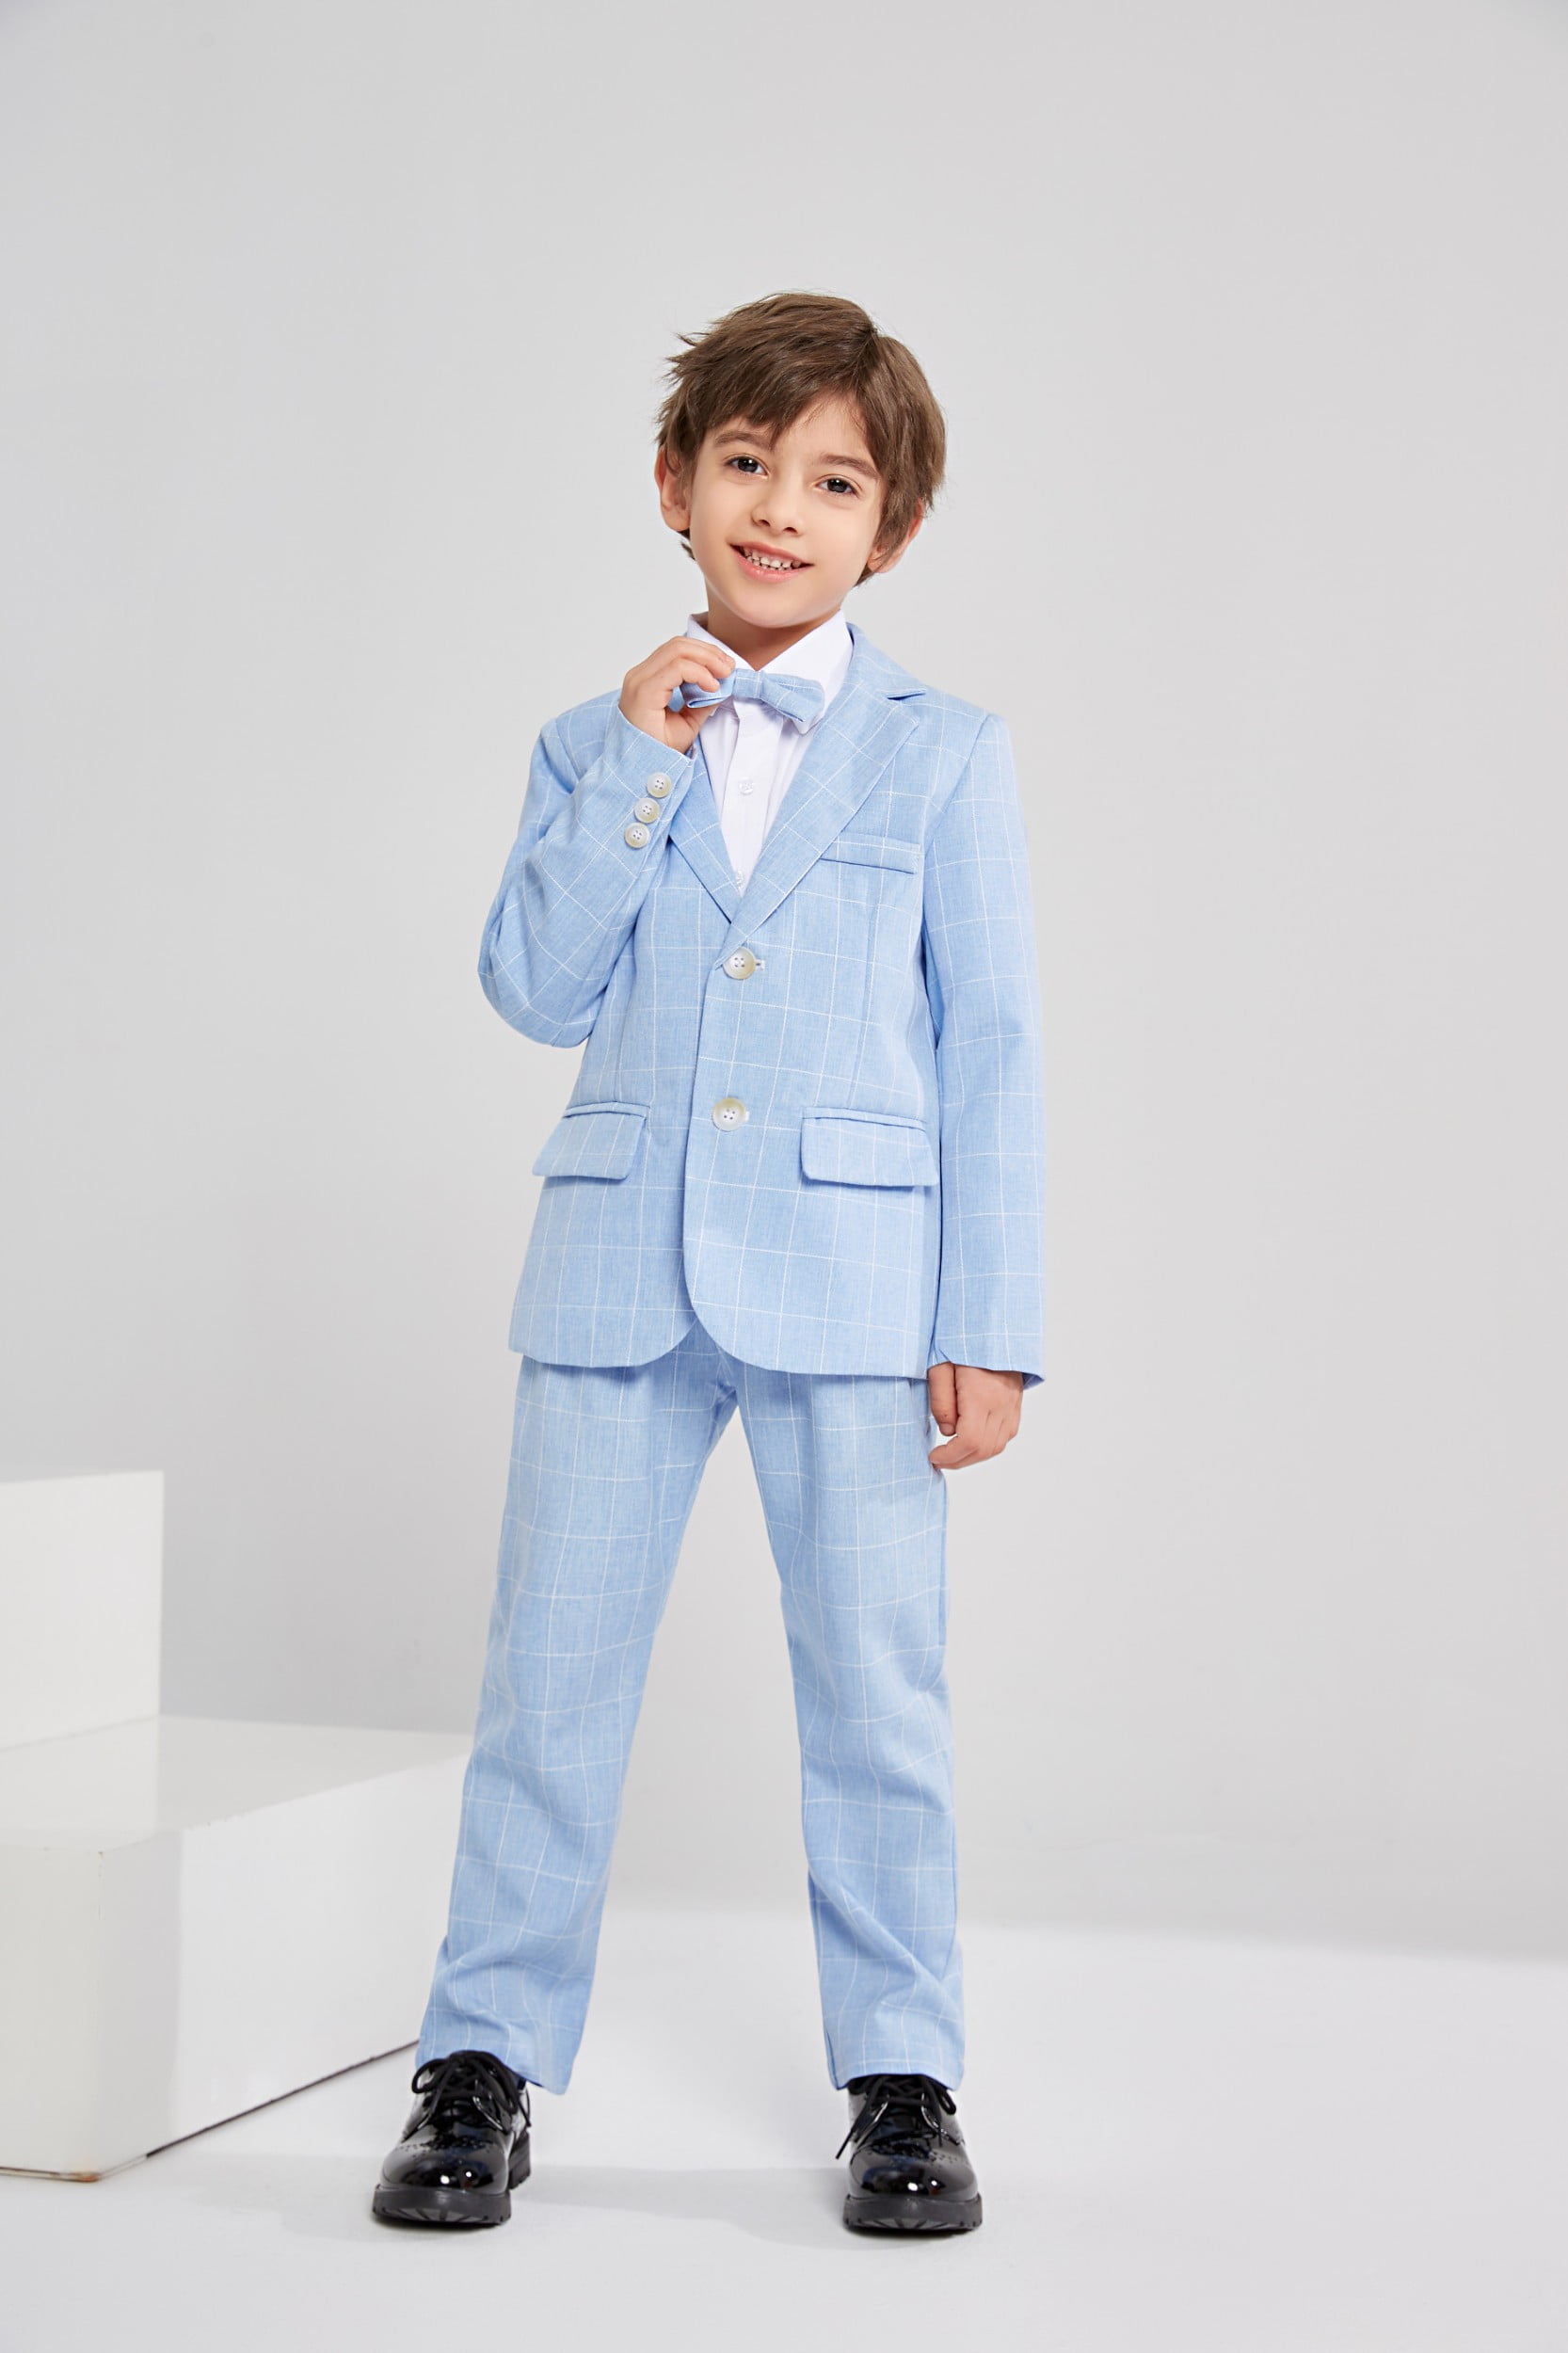 LOLANTA Boys Suit Wedding Ring Bearer Outfit Kids Suit Set, Plaid ...